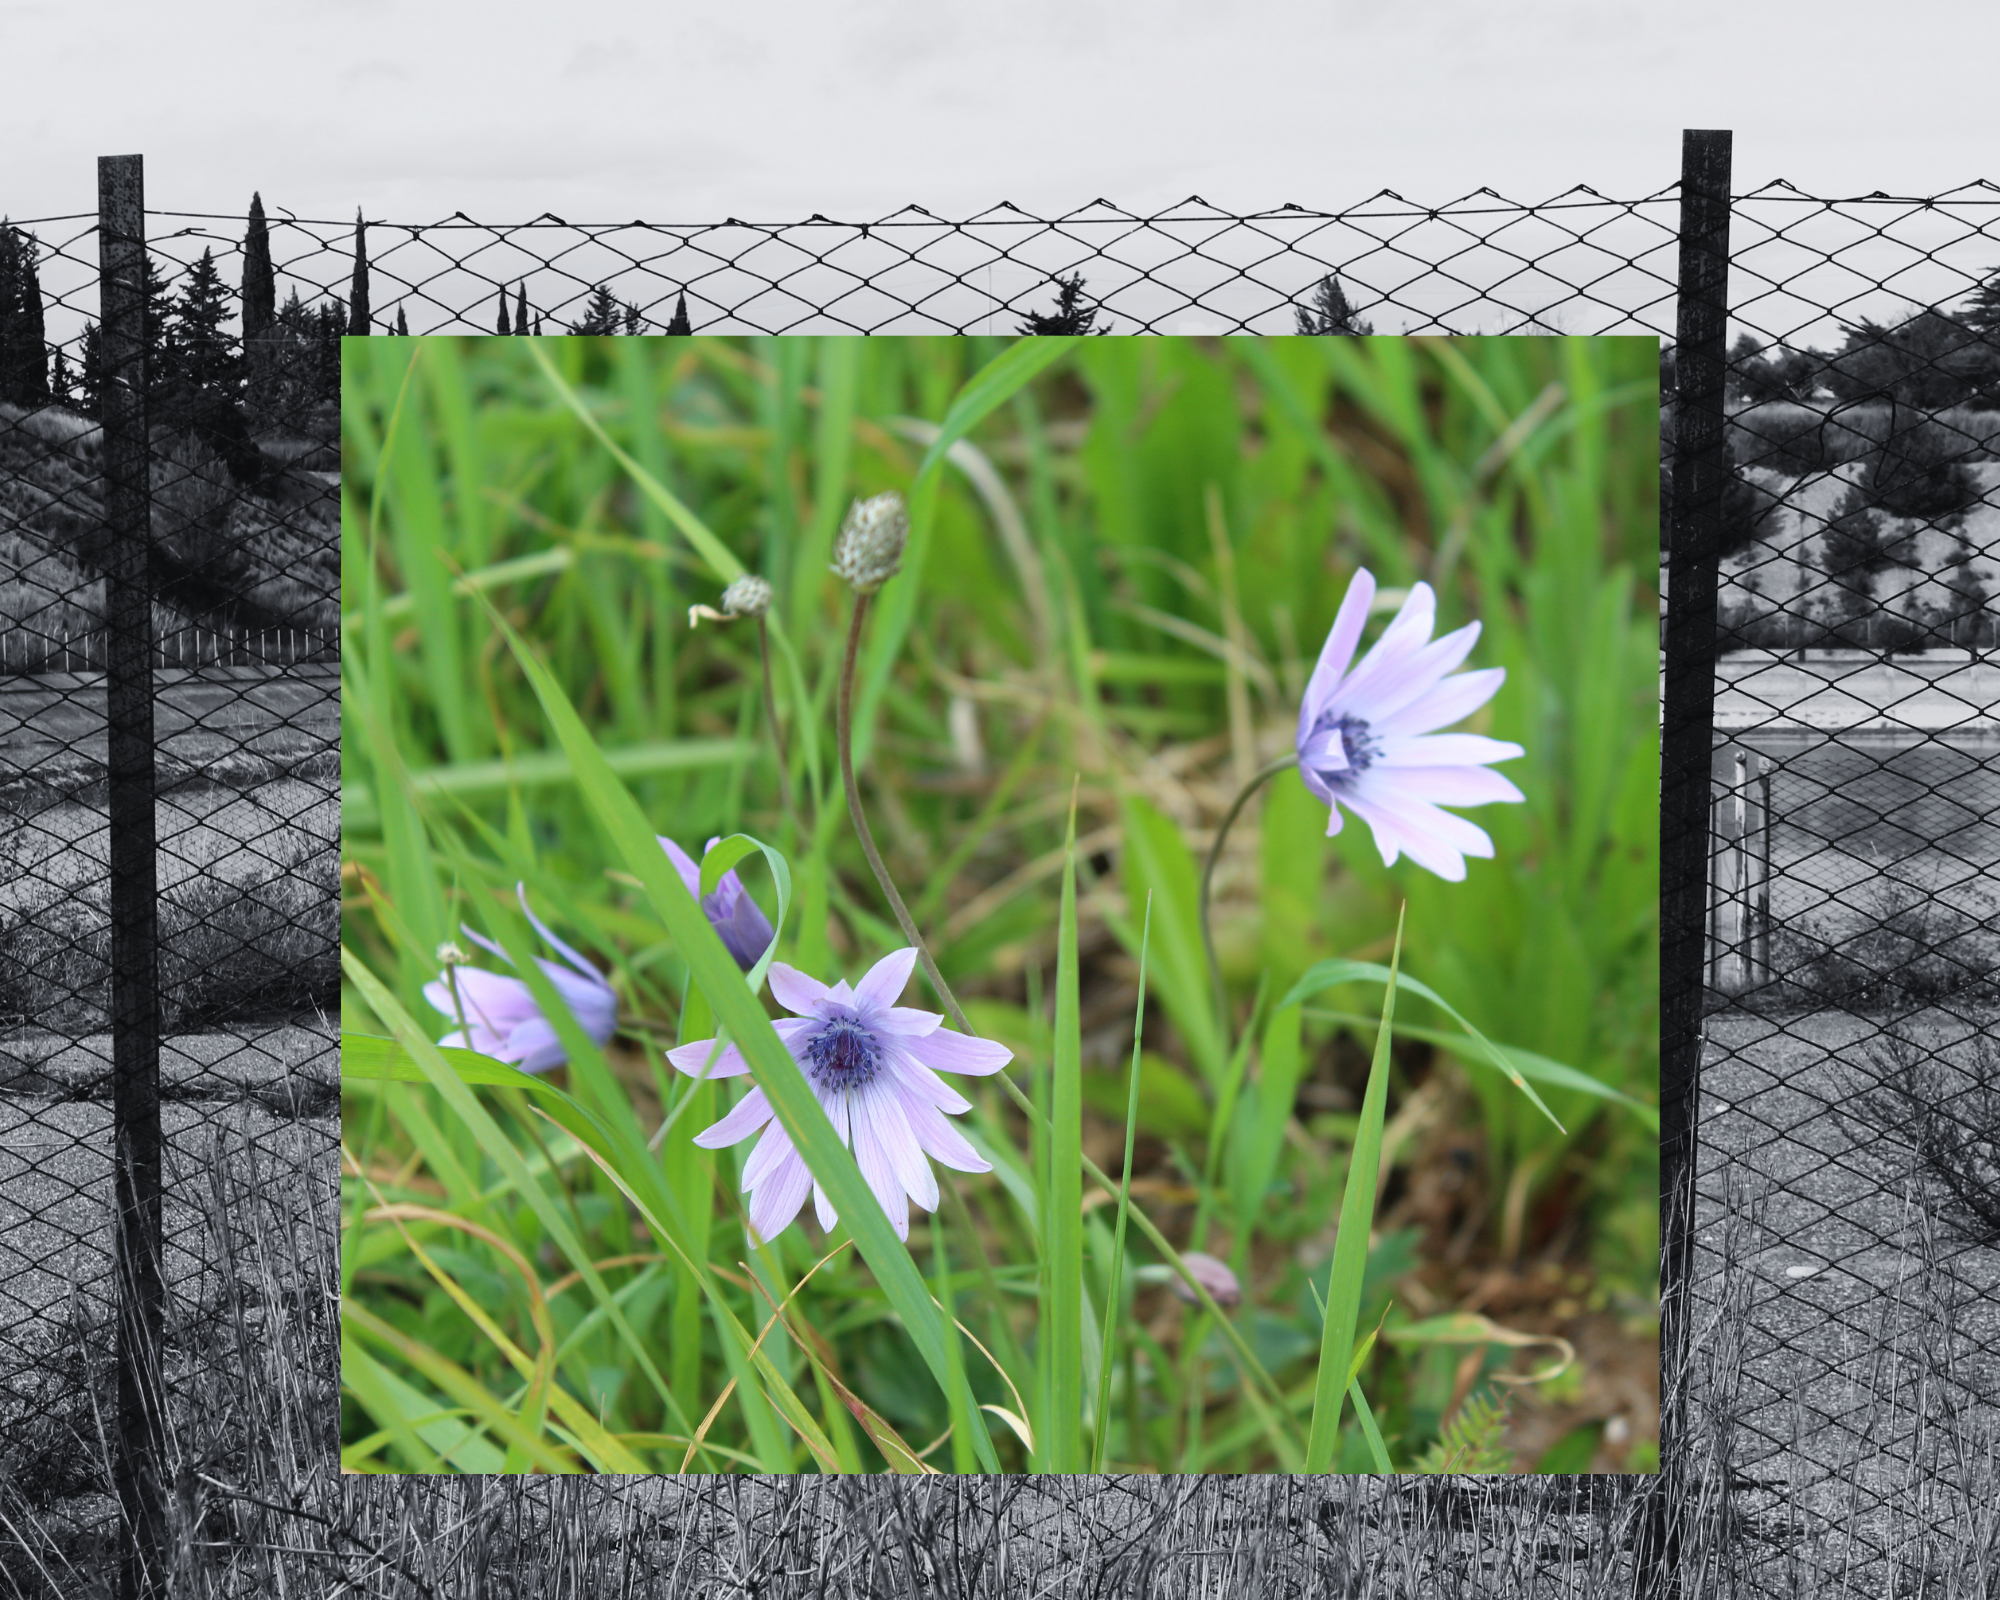 Anemoni, dai petali lilla e la corolla viola, tra l'erba; in sfondo la recinzione della vasca in bianco e nero